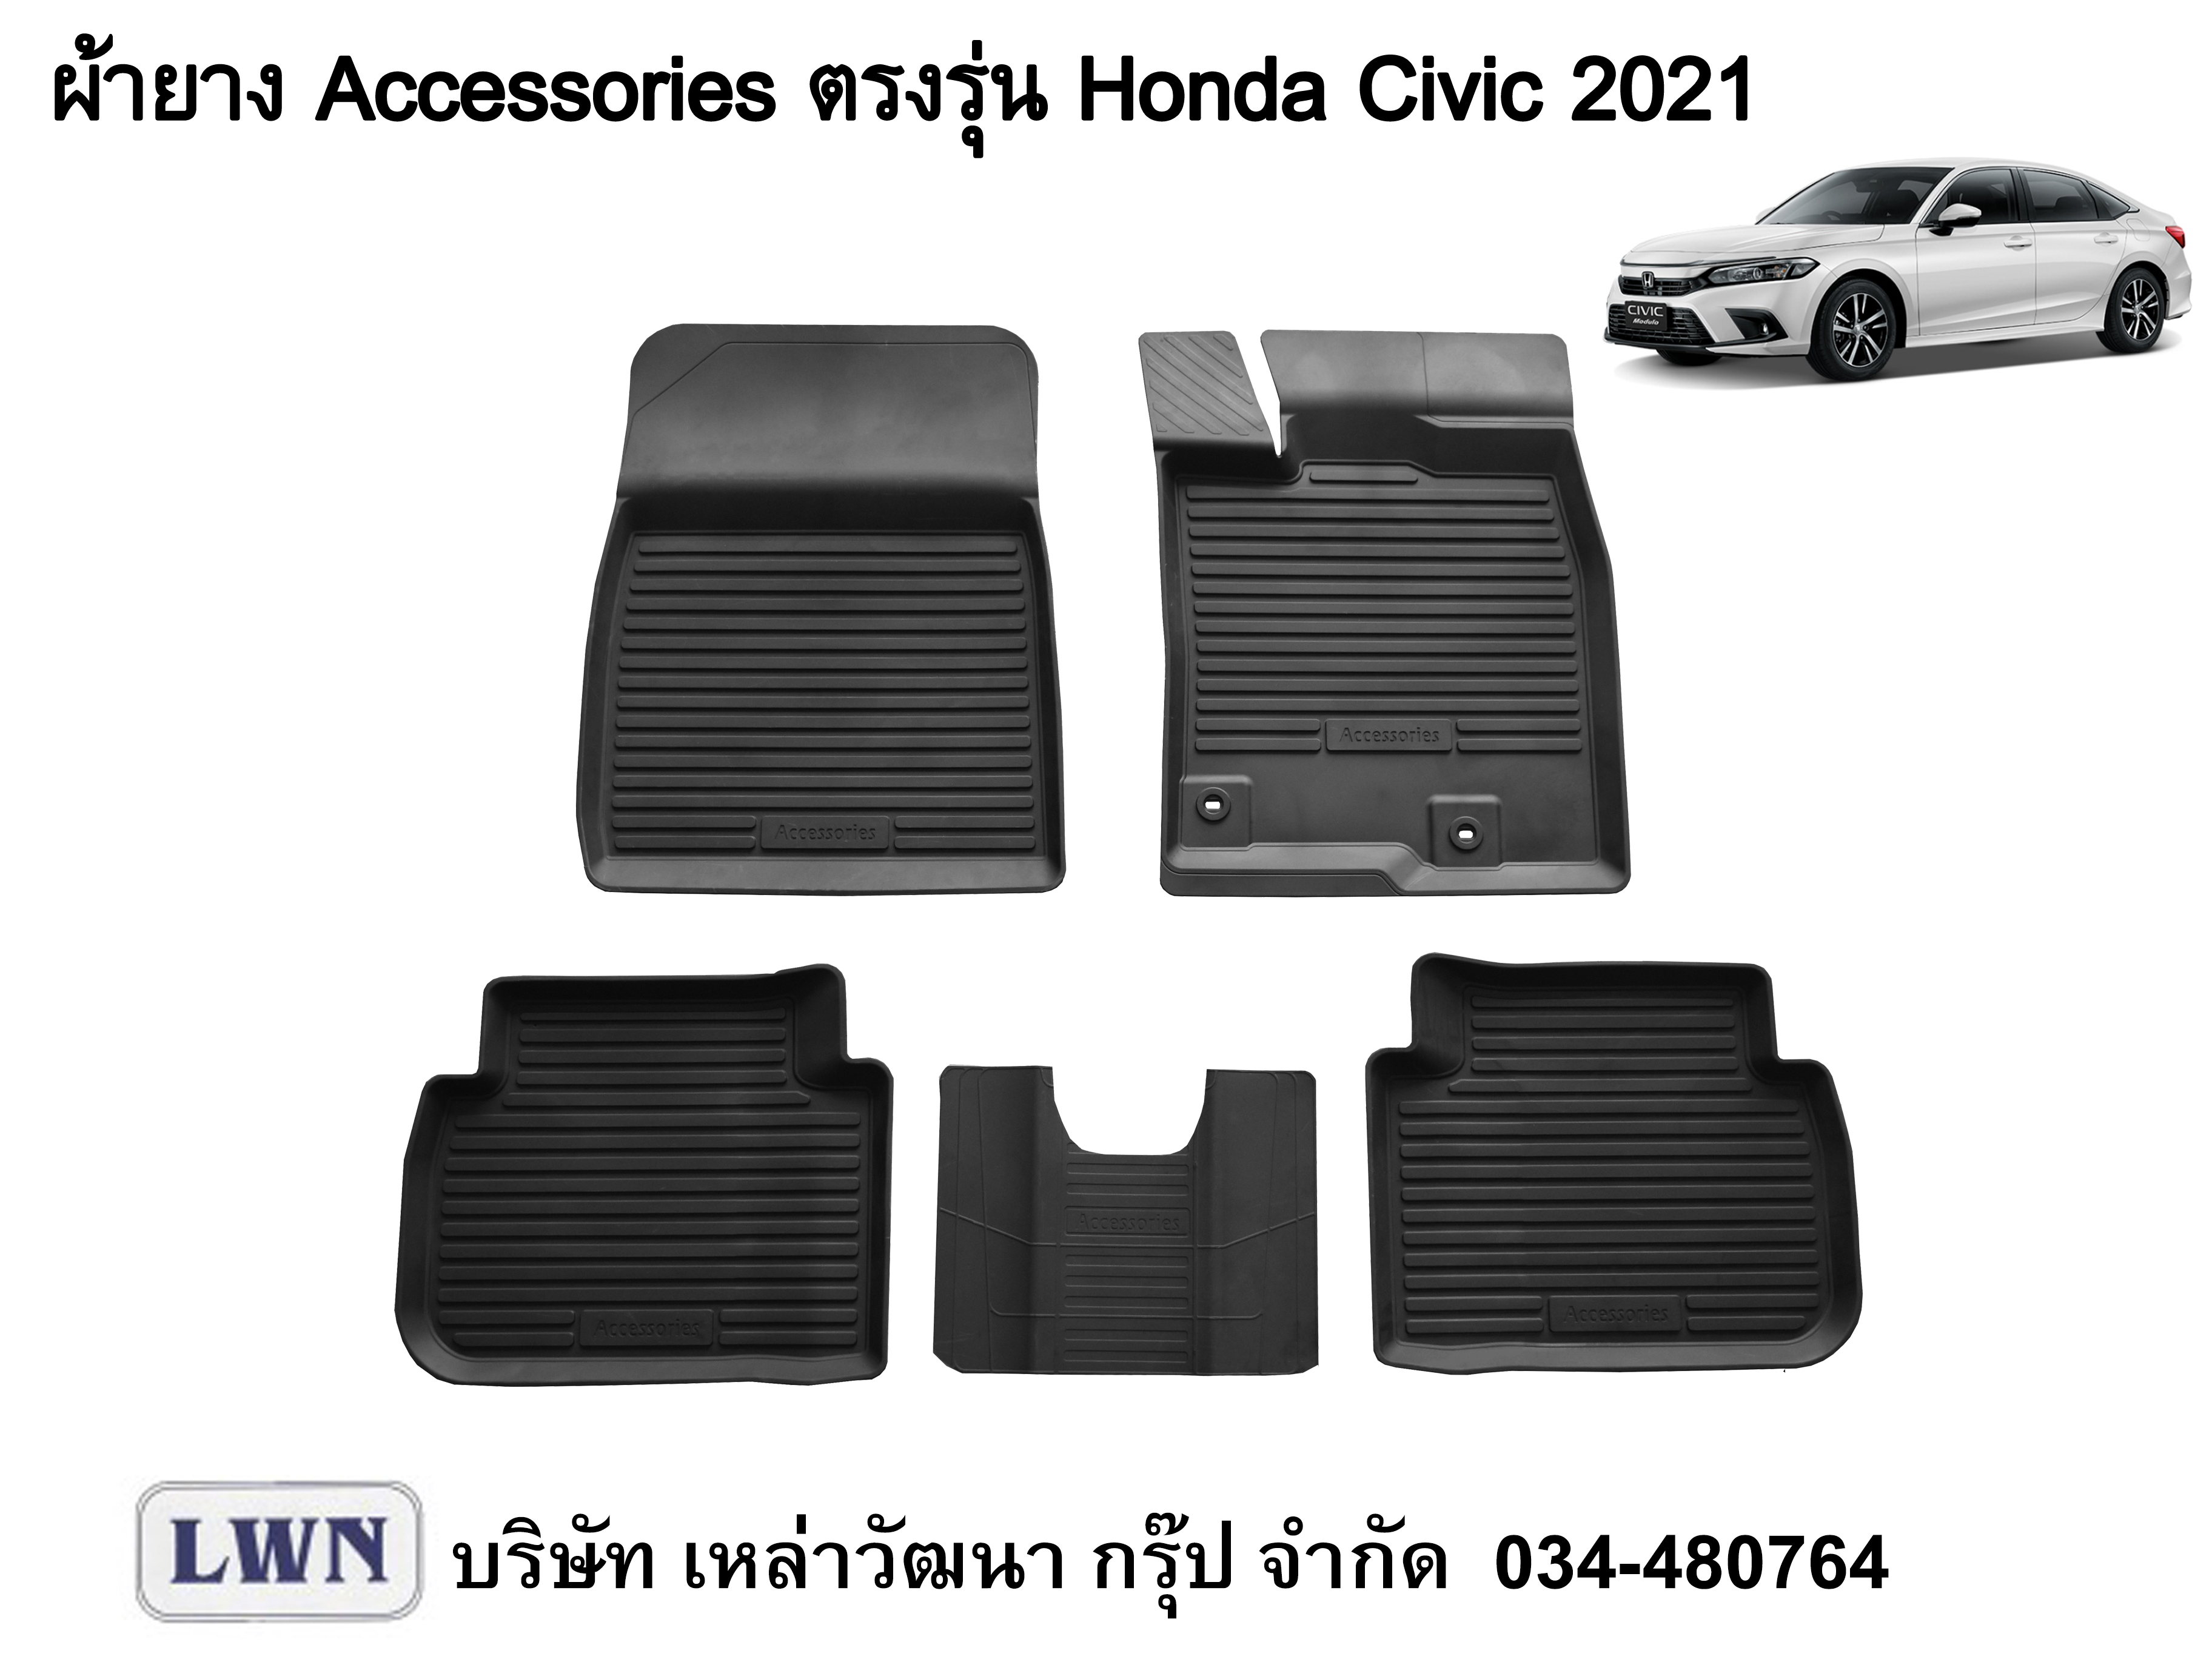 ACC-Honda Civic 2021